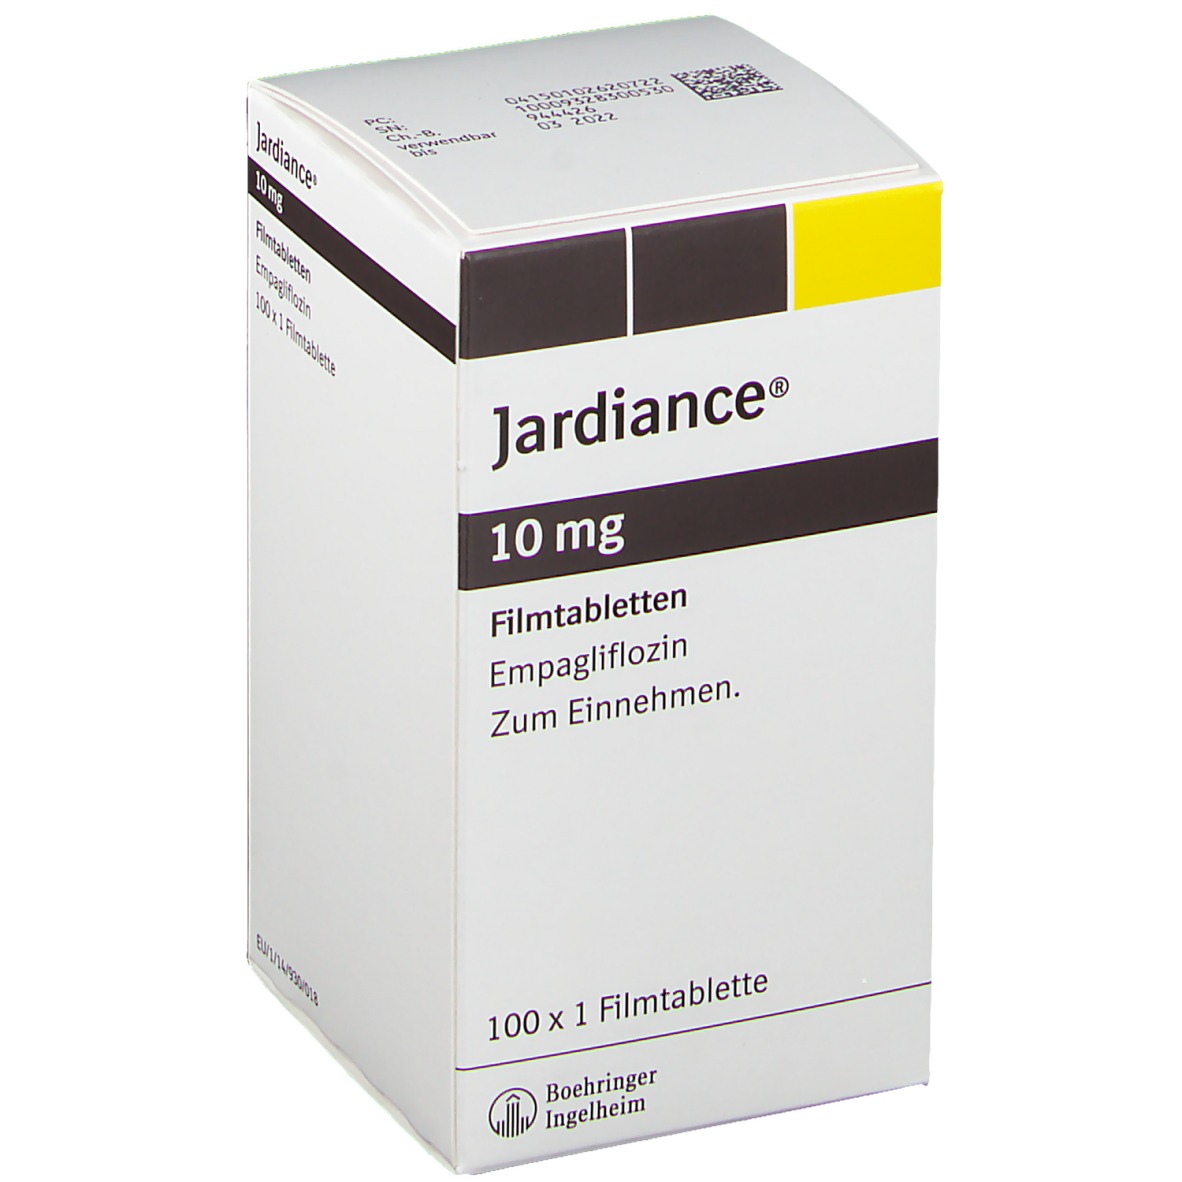 Jardiance® 10 mg Filmtabletten 100 St - shop-apotheke.com